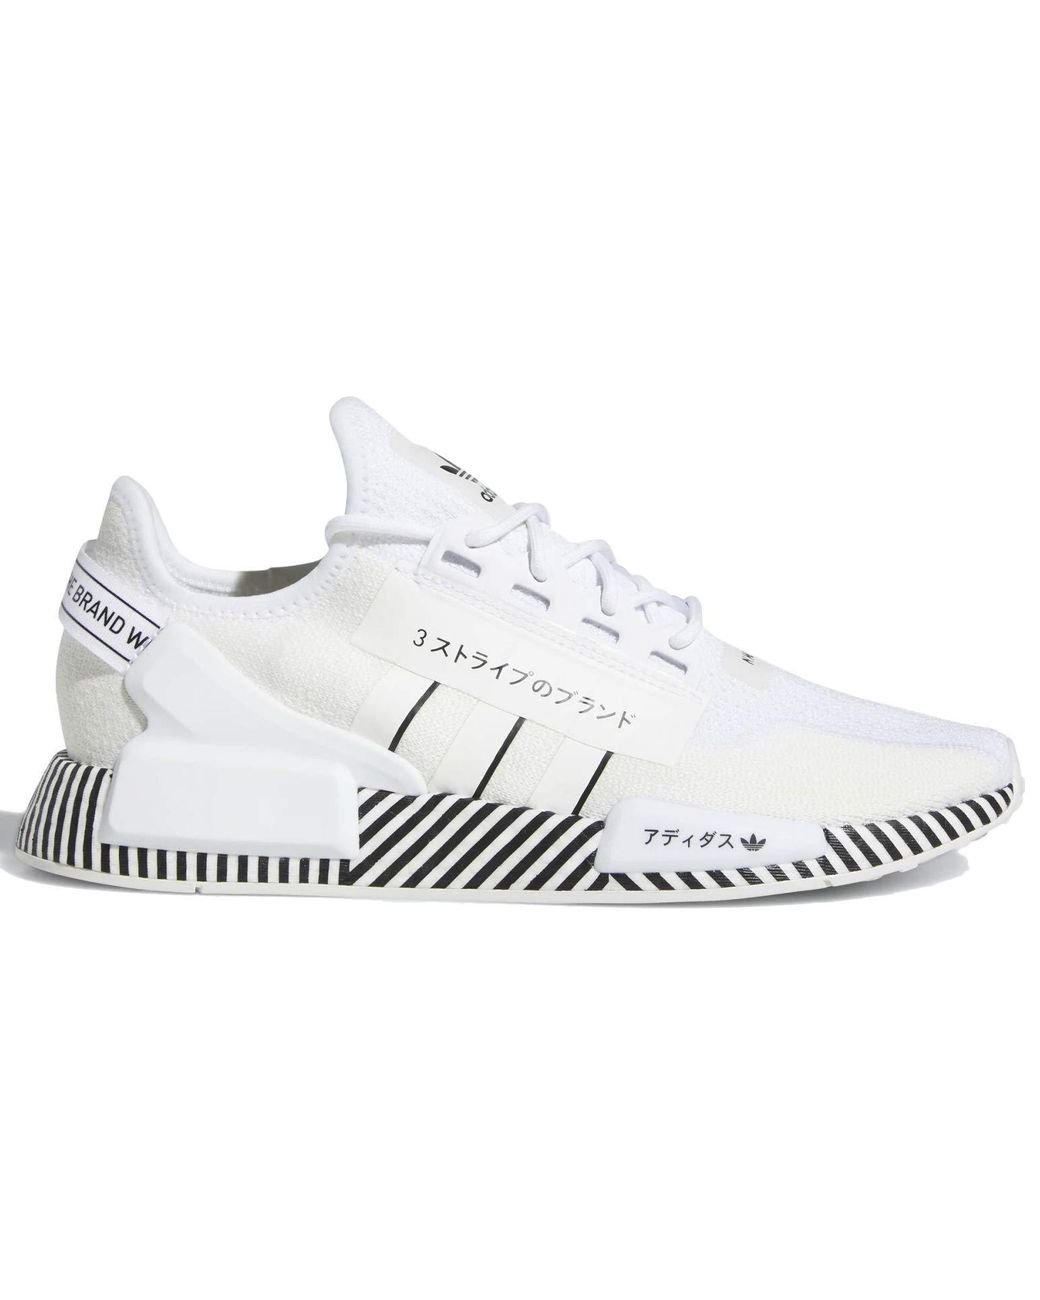 adidas Originals NMD R1 V2 s Casual Running Shoe Fy2105 Size 8.5 White /Black/White für Herren | Lyst DE